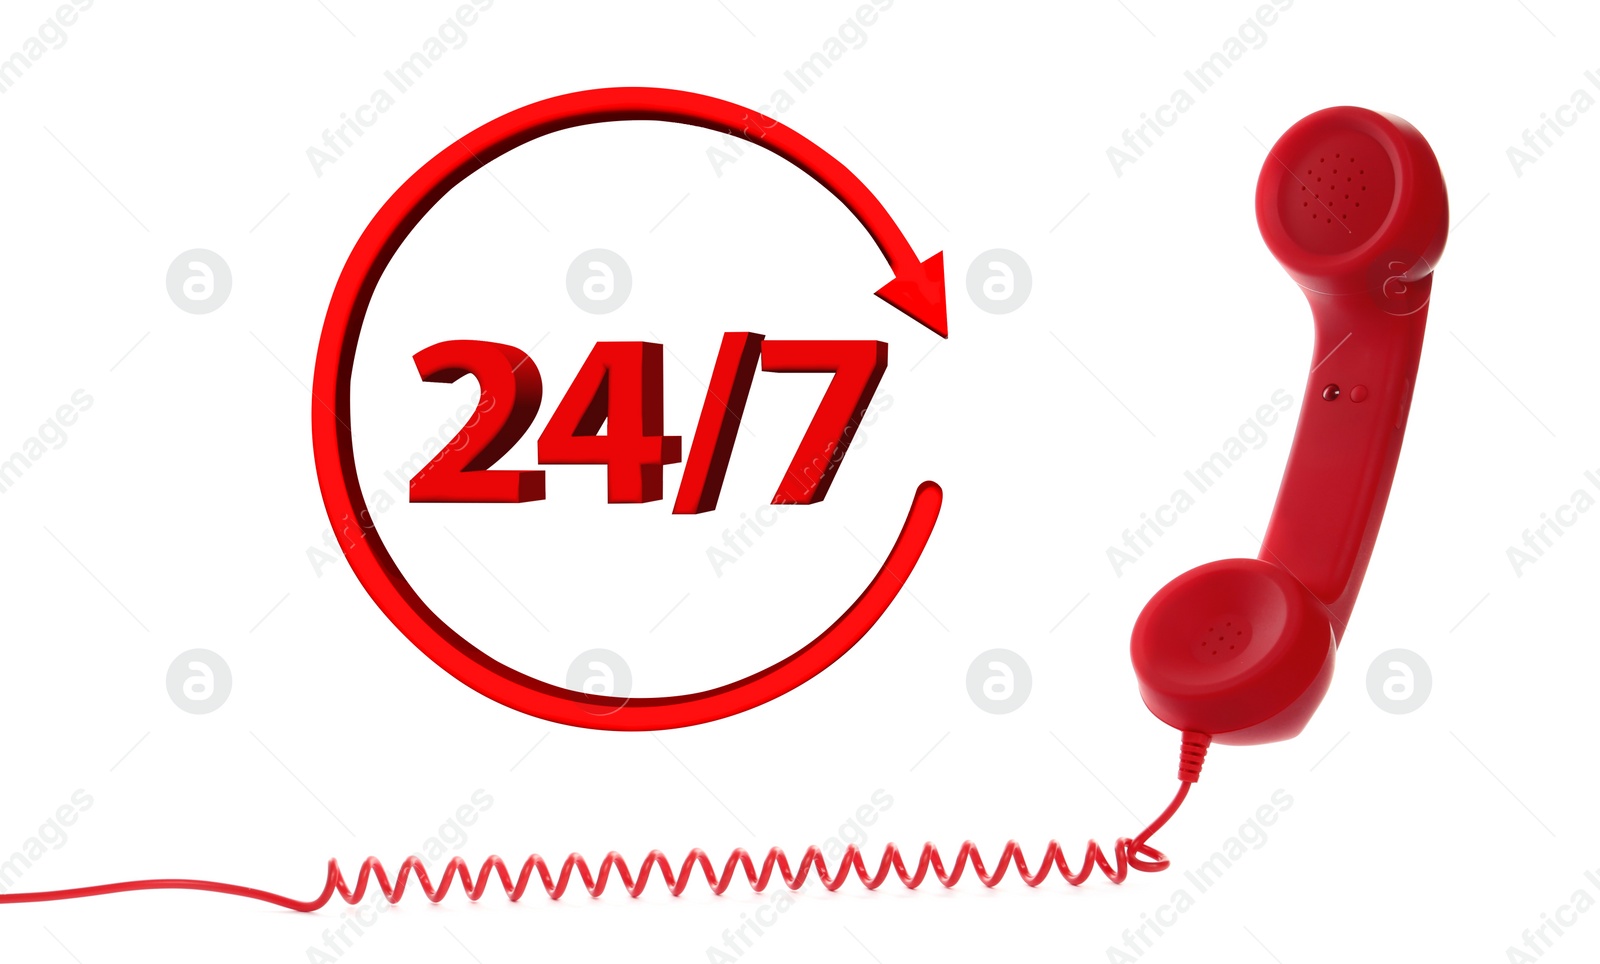 Image of 24/7 hotline service. Red handset on white background, banner design